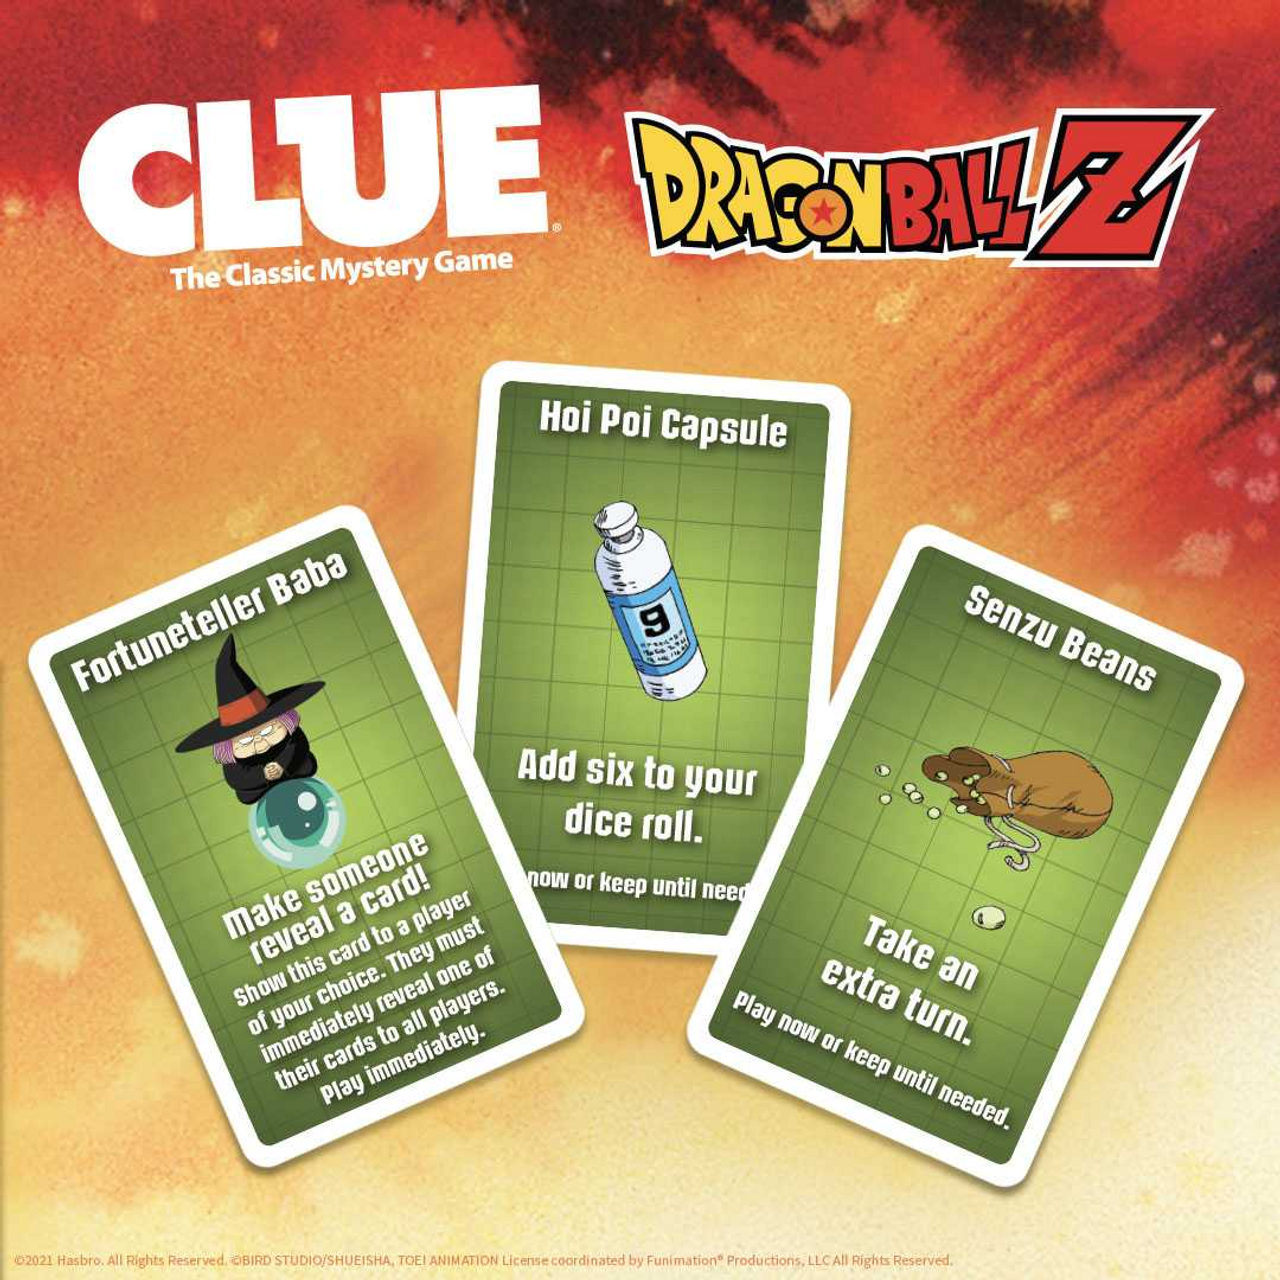 CLUE: Dragon Ball Z